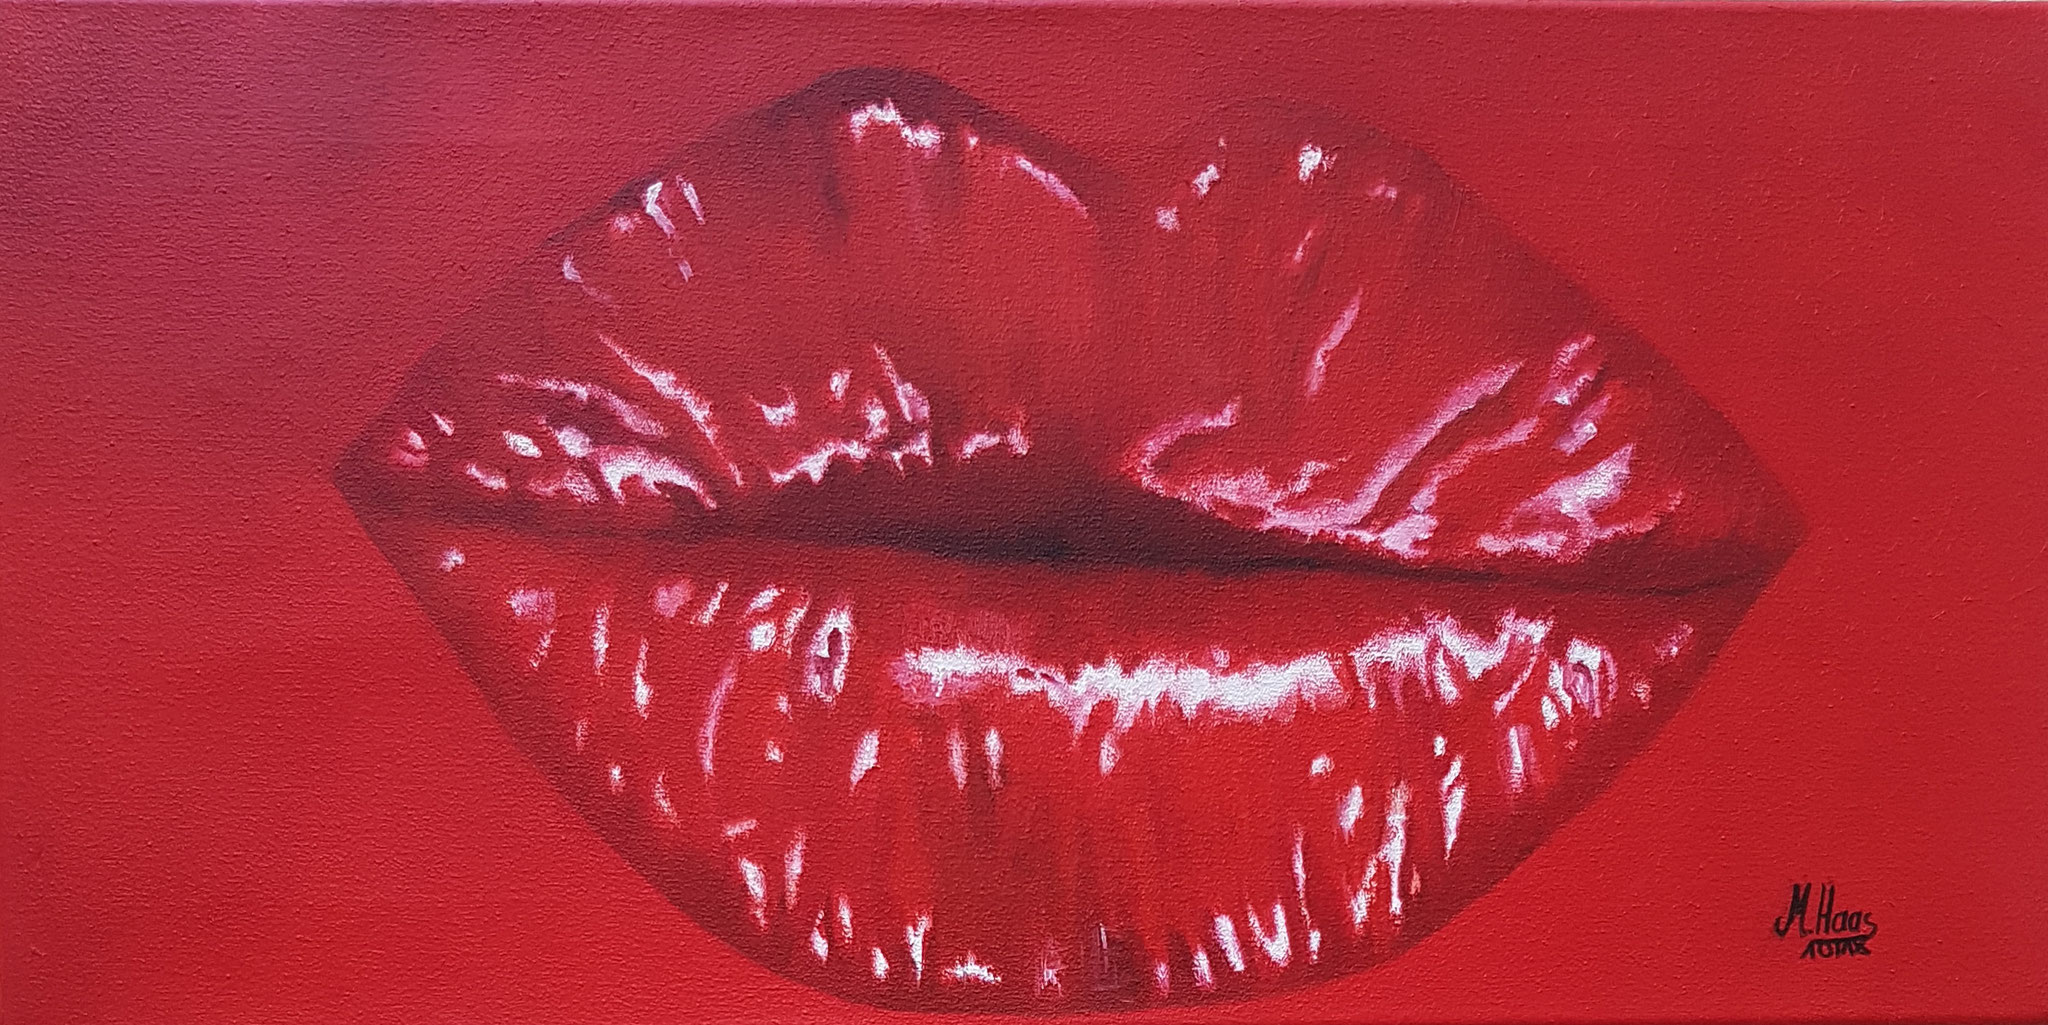 Rote Lippen-30x60cm